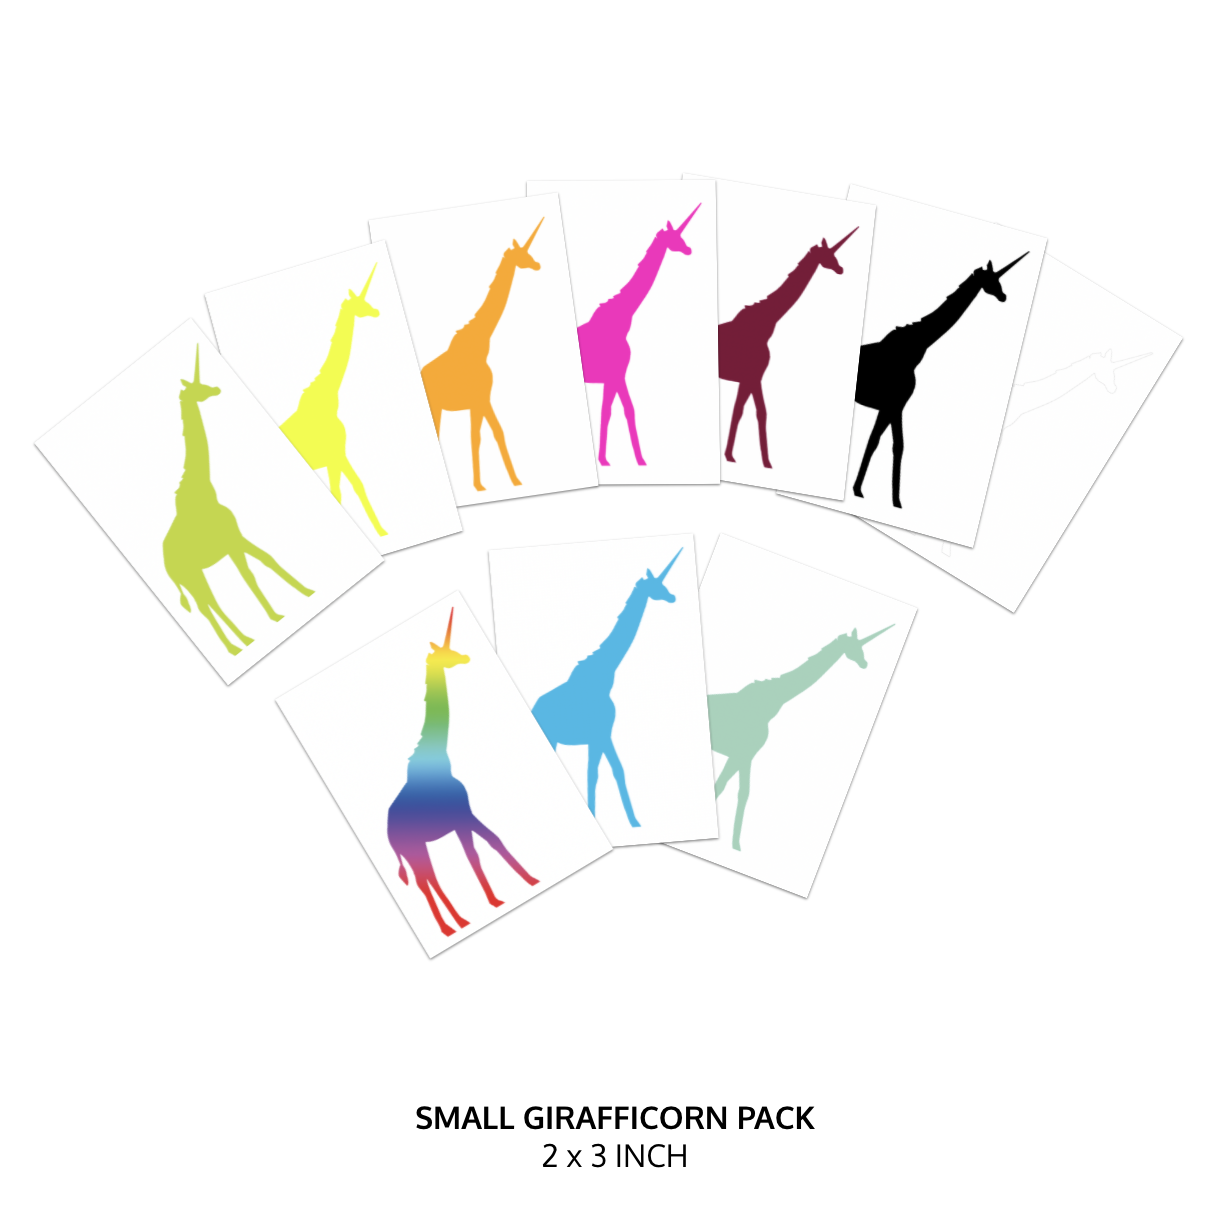 NEW QUALITY Girafficorn Sticker Packs